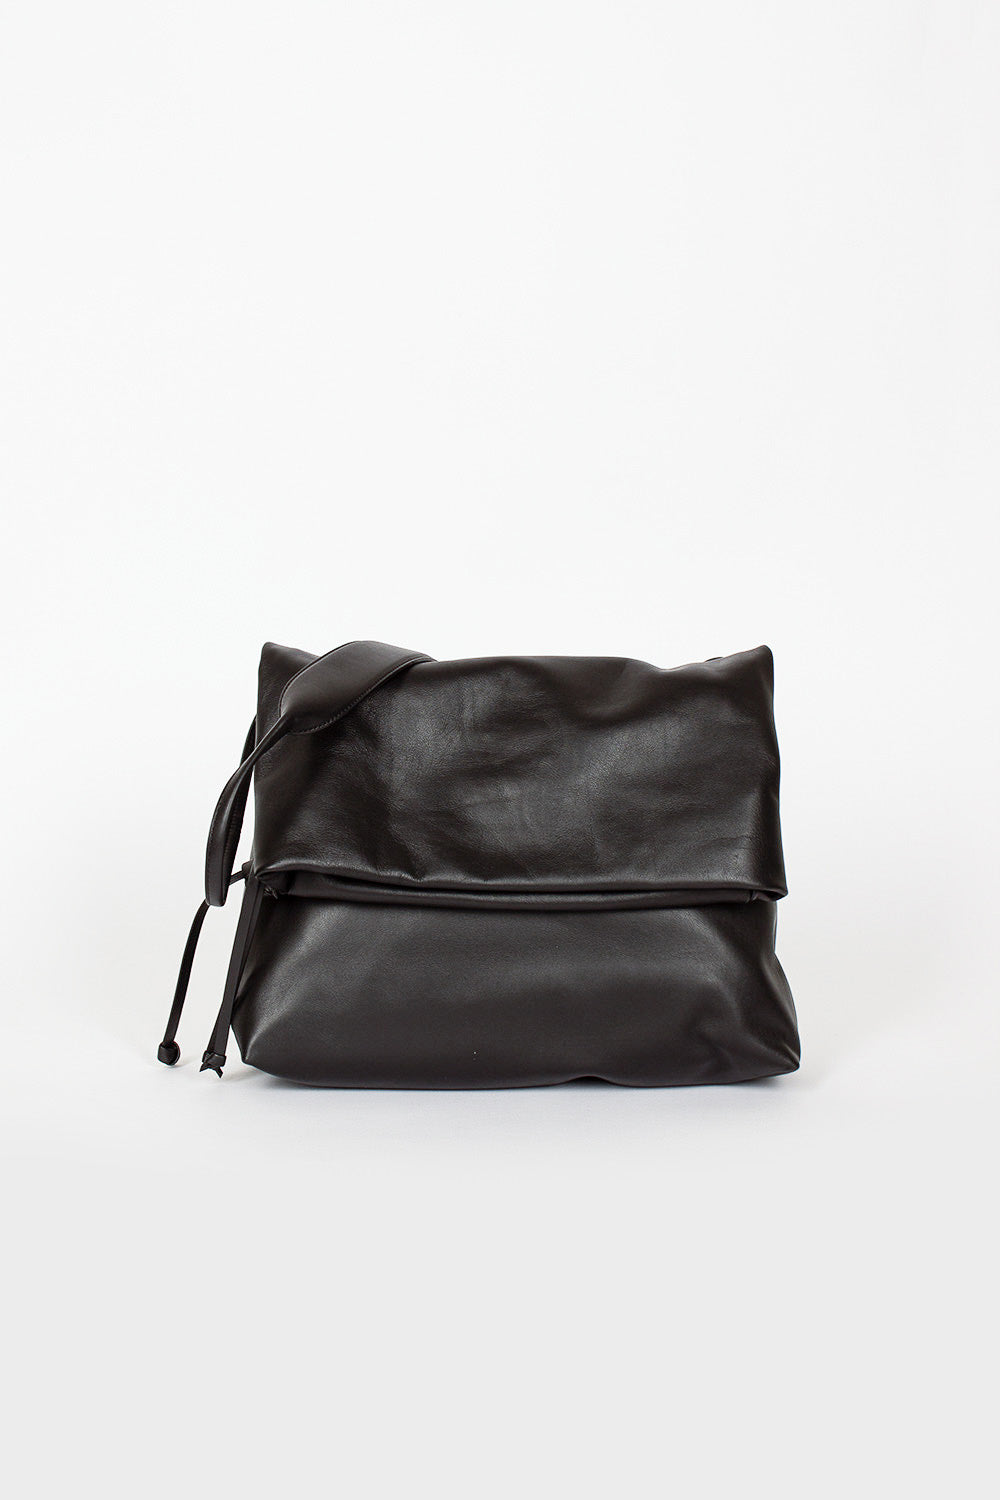 Folded Leather Bag Black